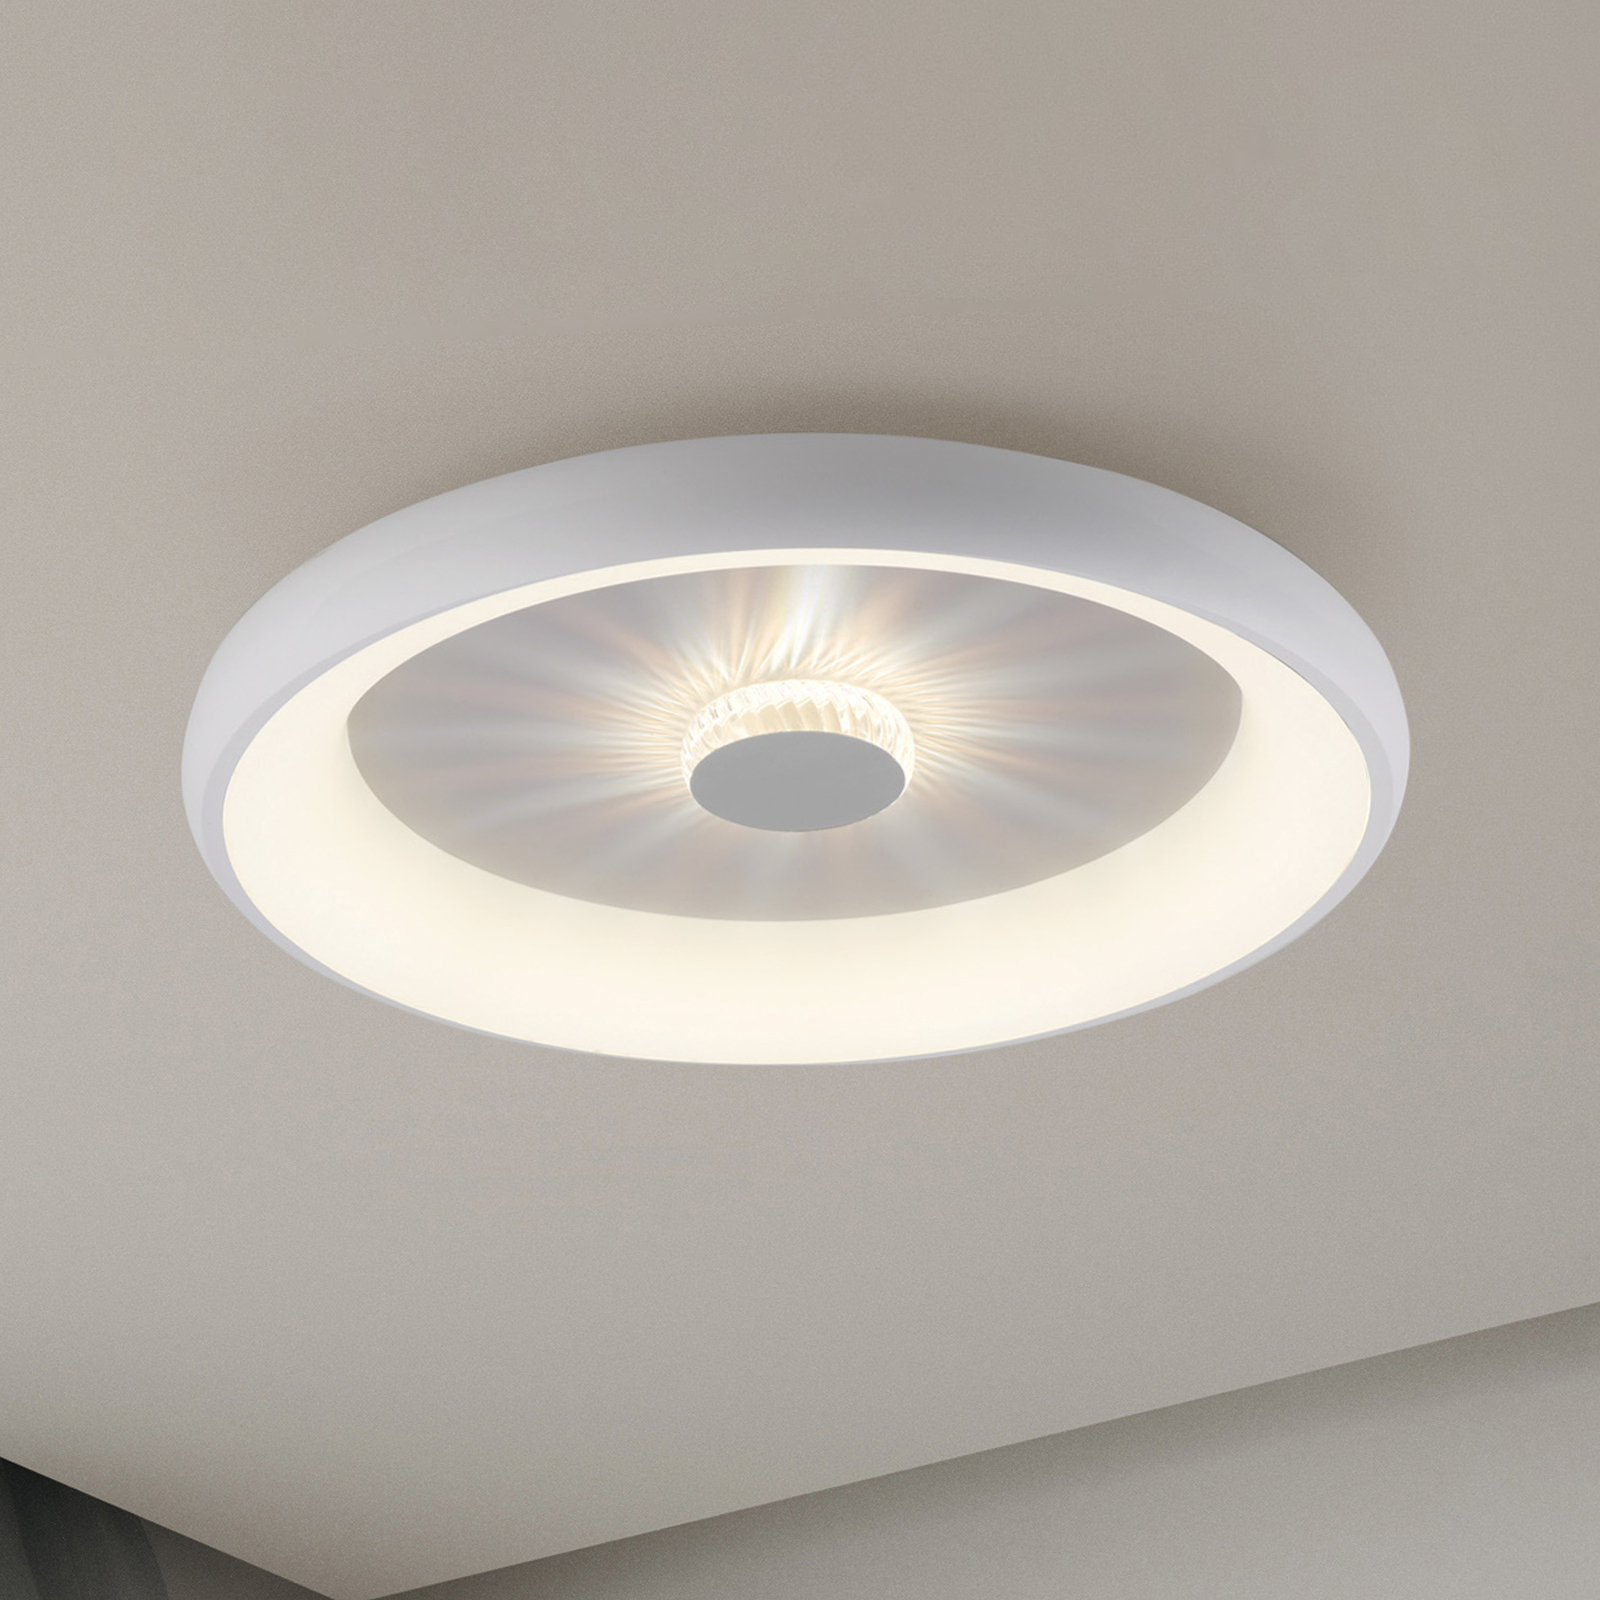 Vertigo LED plafondlamp, CCT, Ø 61,5 cm, wit